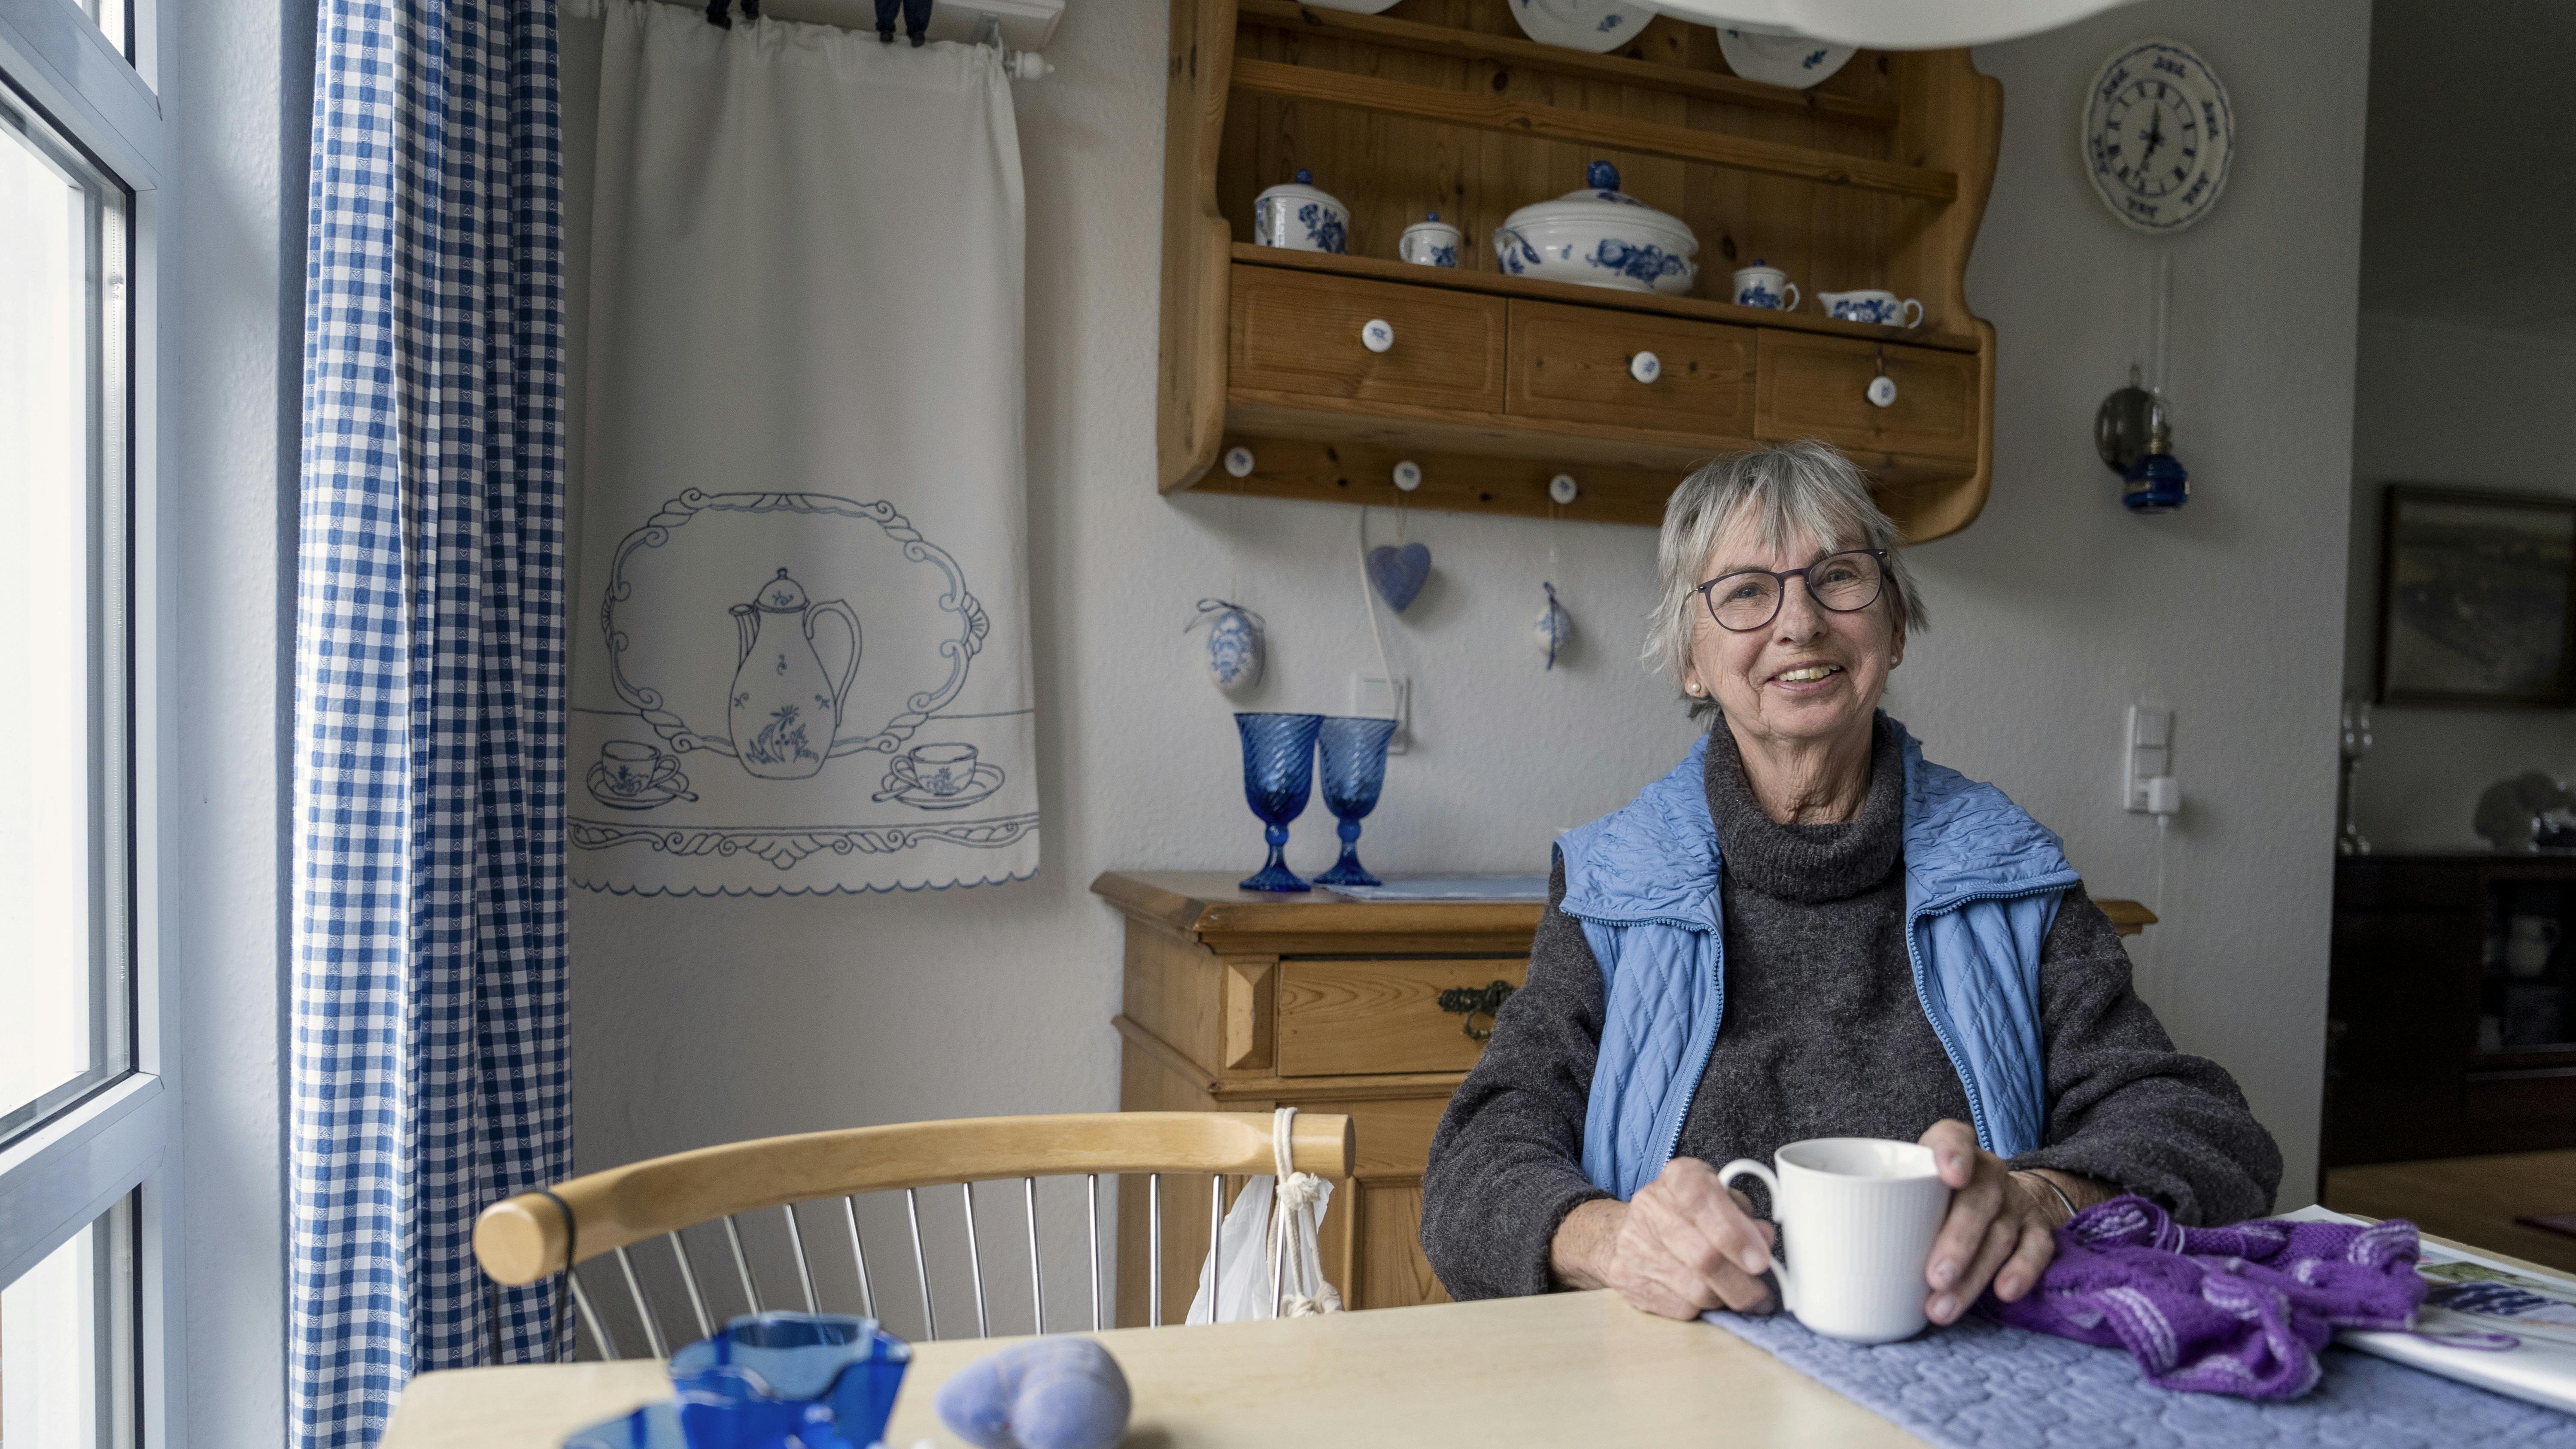 Elly Irene Hansen hygger med kaffe og strikketøj i sin stue i Ådalen i Nyborg, hvor hendes yndlingsfarve, blå, dominerer på smukkest gennemførte vis.